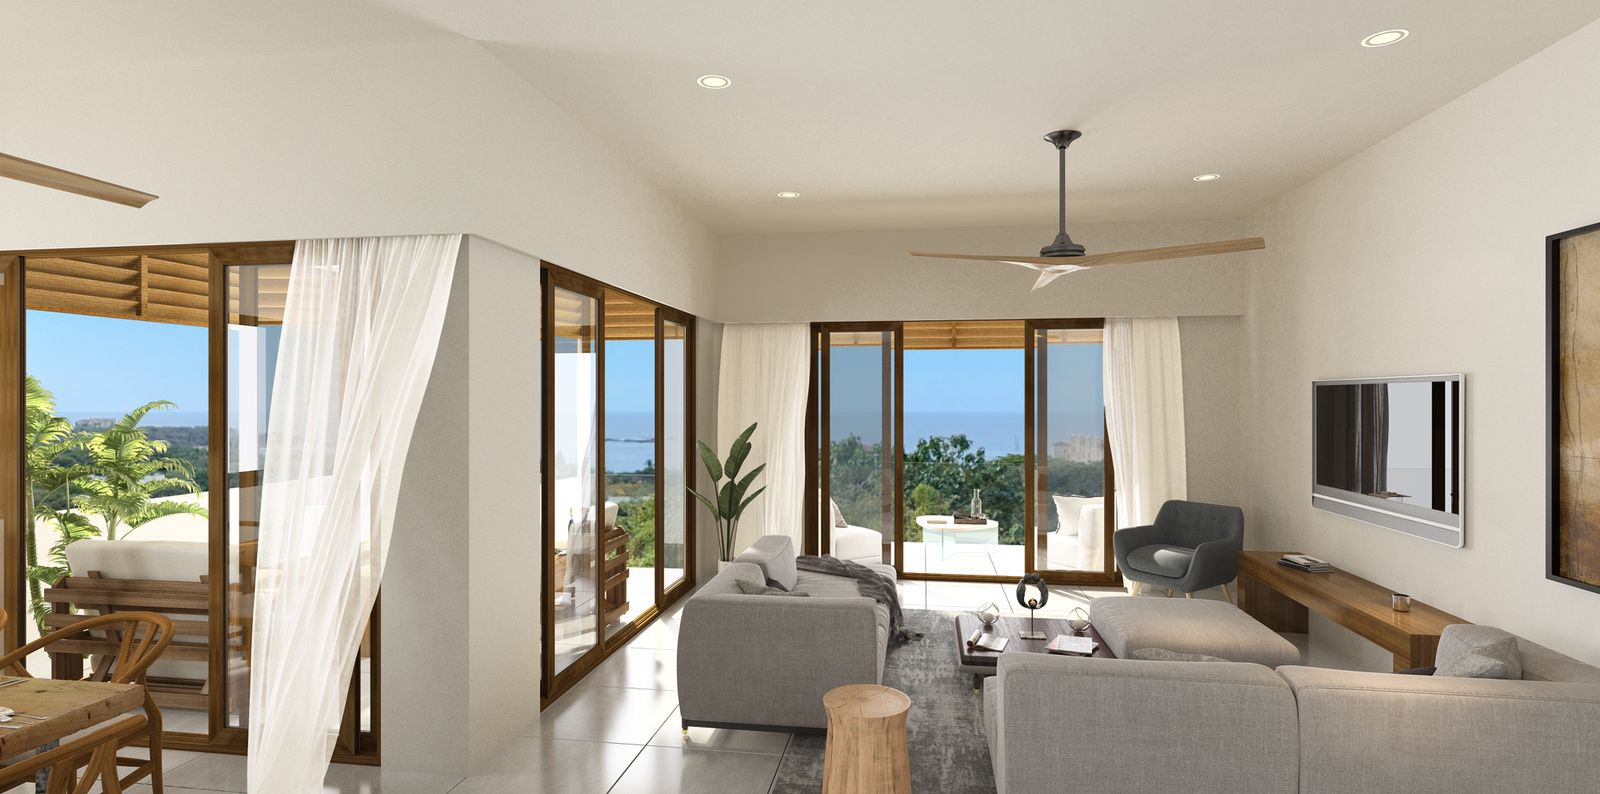 Villas Puesta del Sol - Ocean Views over Tamarindo Bay and beyond